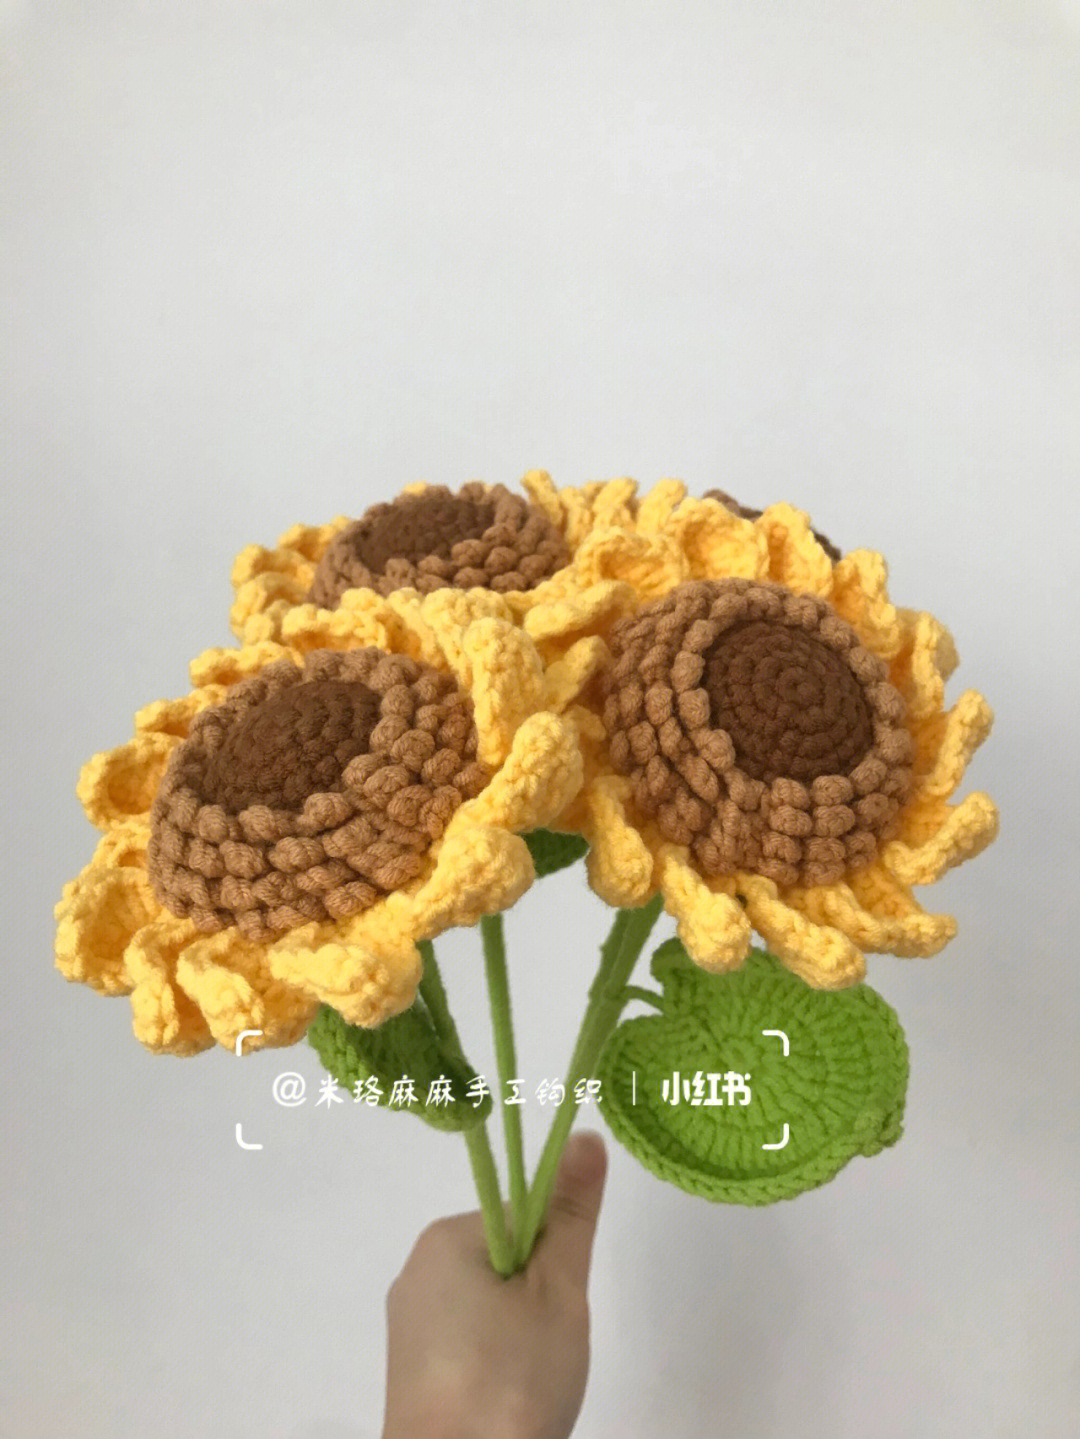 毛线向日葵的编织方法图片